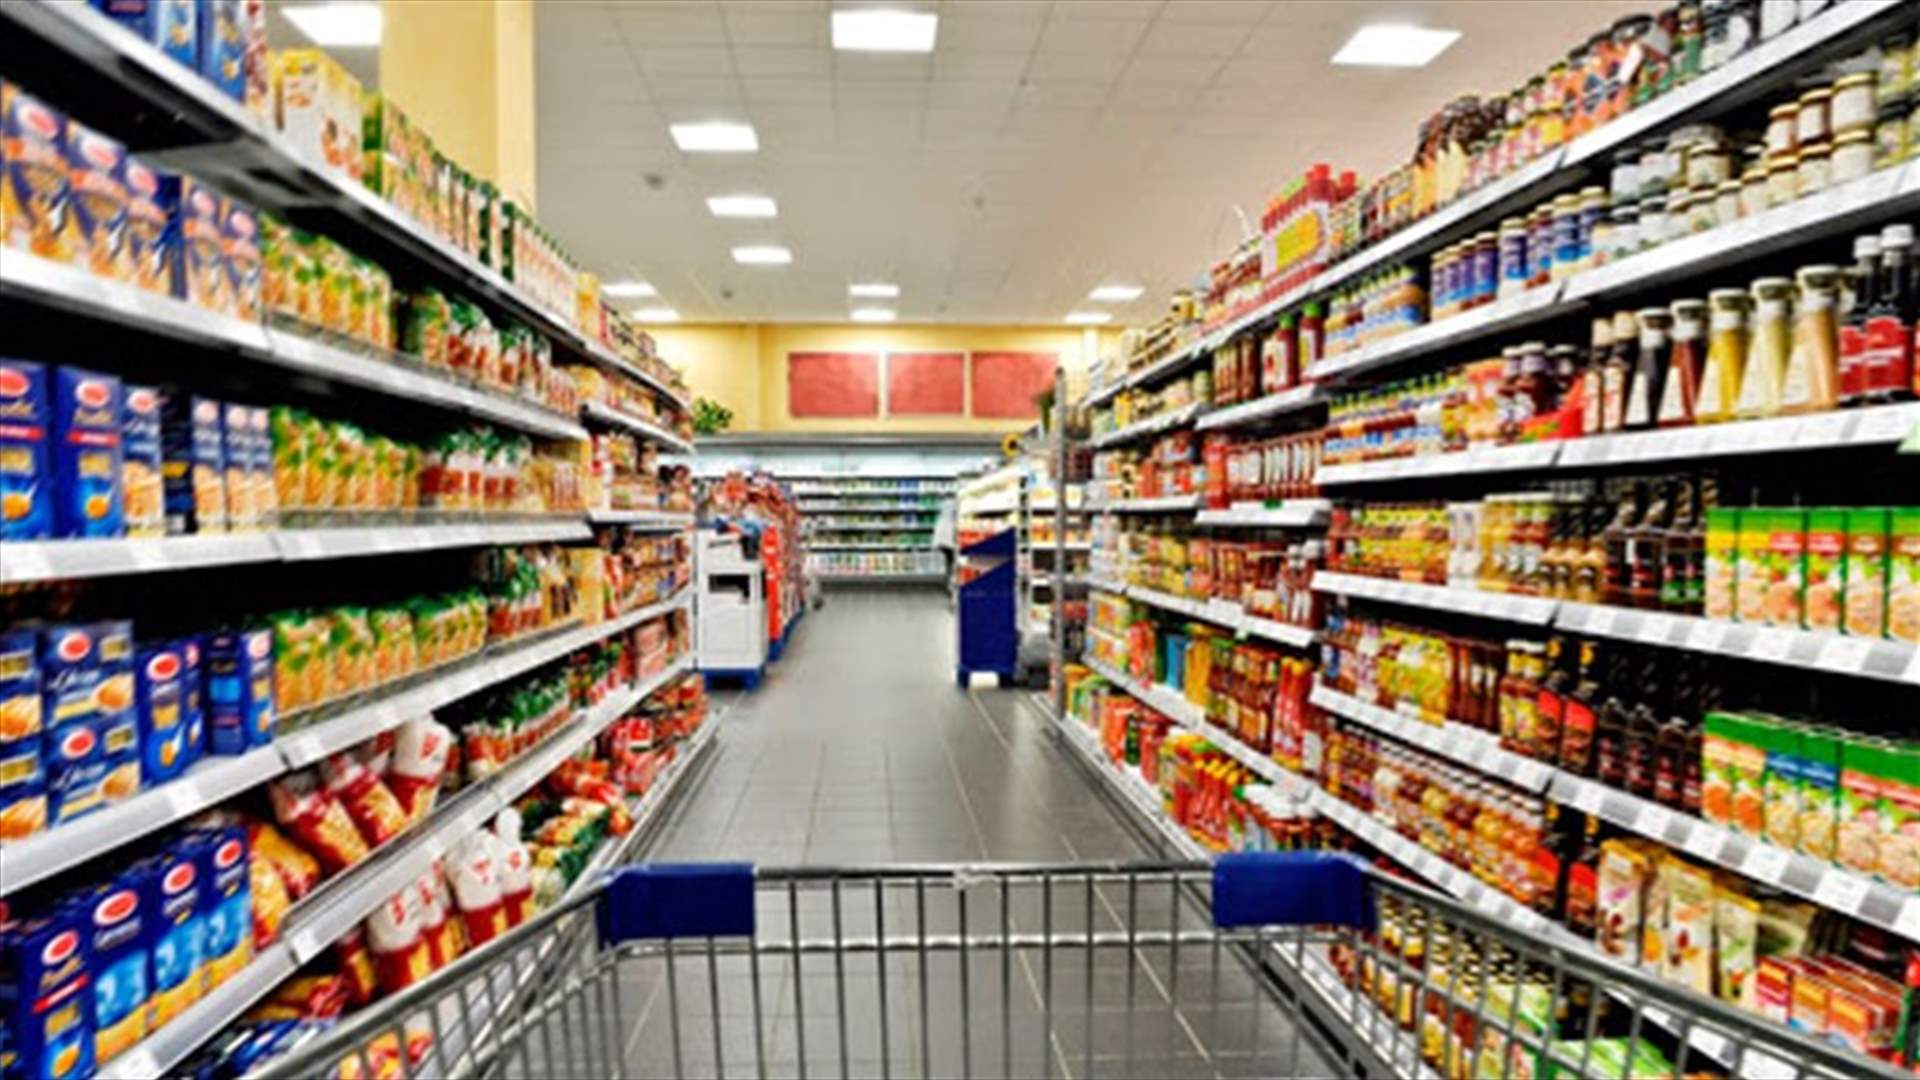 جمعية المستهلك تنشر مؤشر الأسعار... ارتفاع بلغ 45.16% منذ بداية تشرين الاول